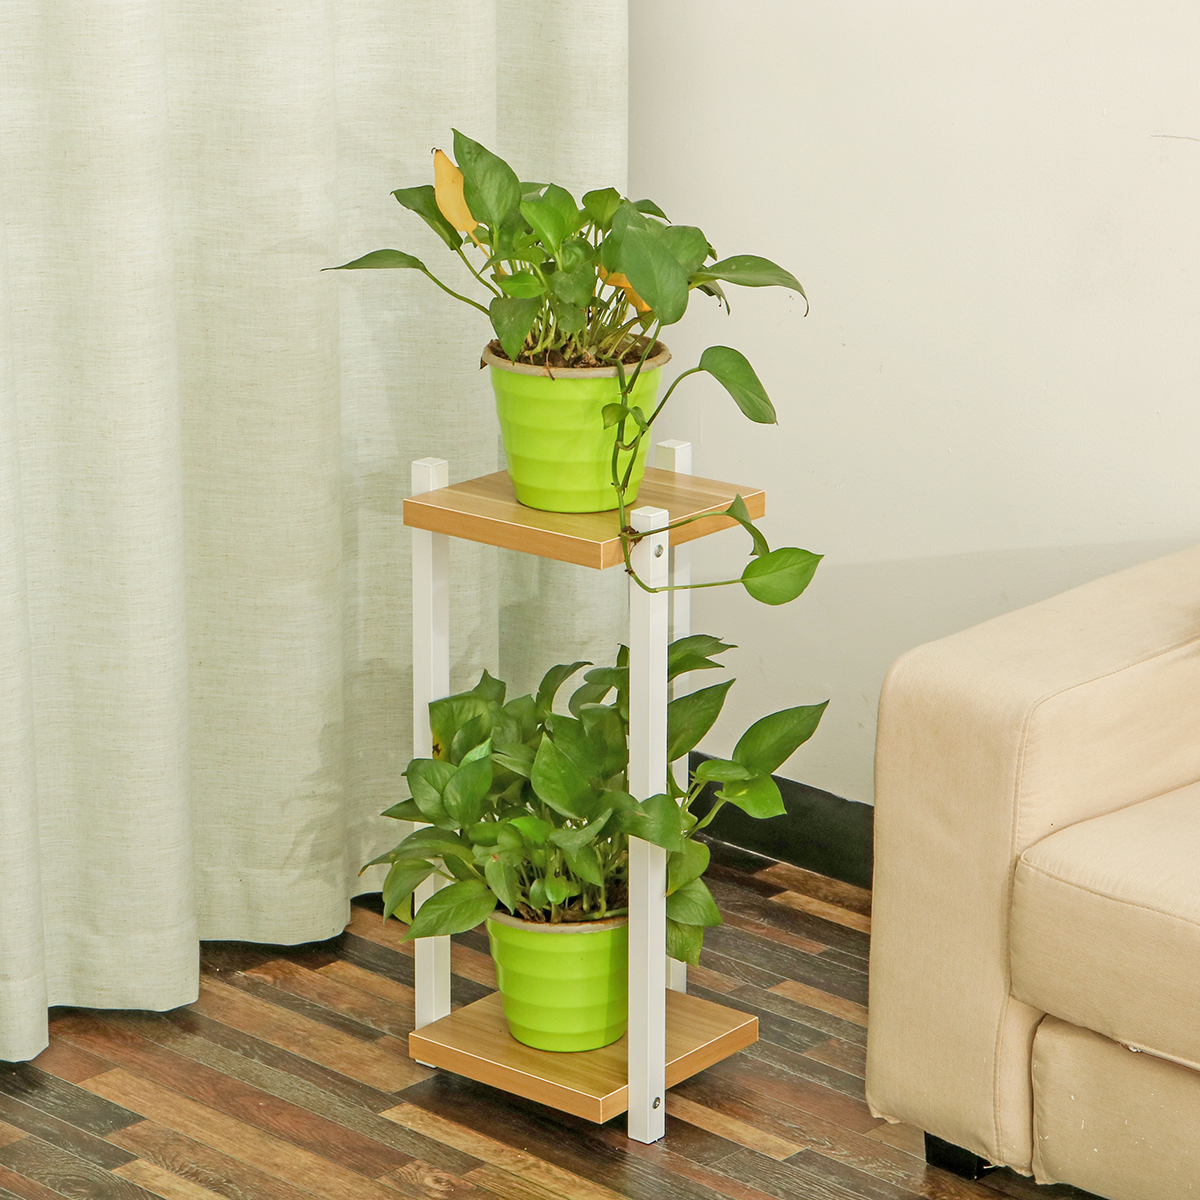 Wooden-Nordic-Flower-Rack-Floor-Shelf-Simple-Living-Room-2-Layers-3-Layers-Flower-Shelf-Indoor-Corne-1747262-9